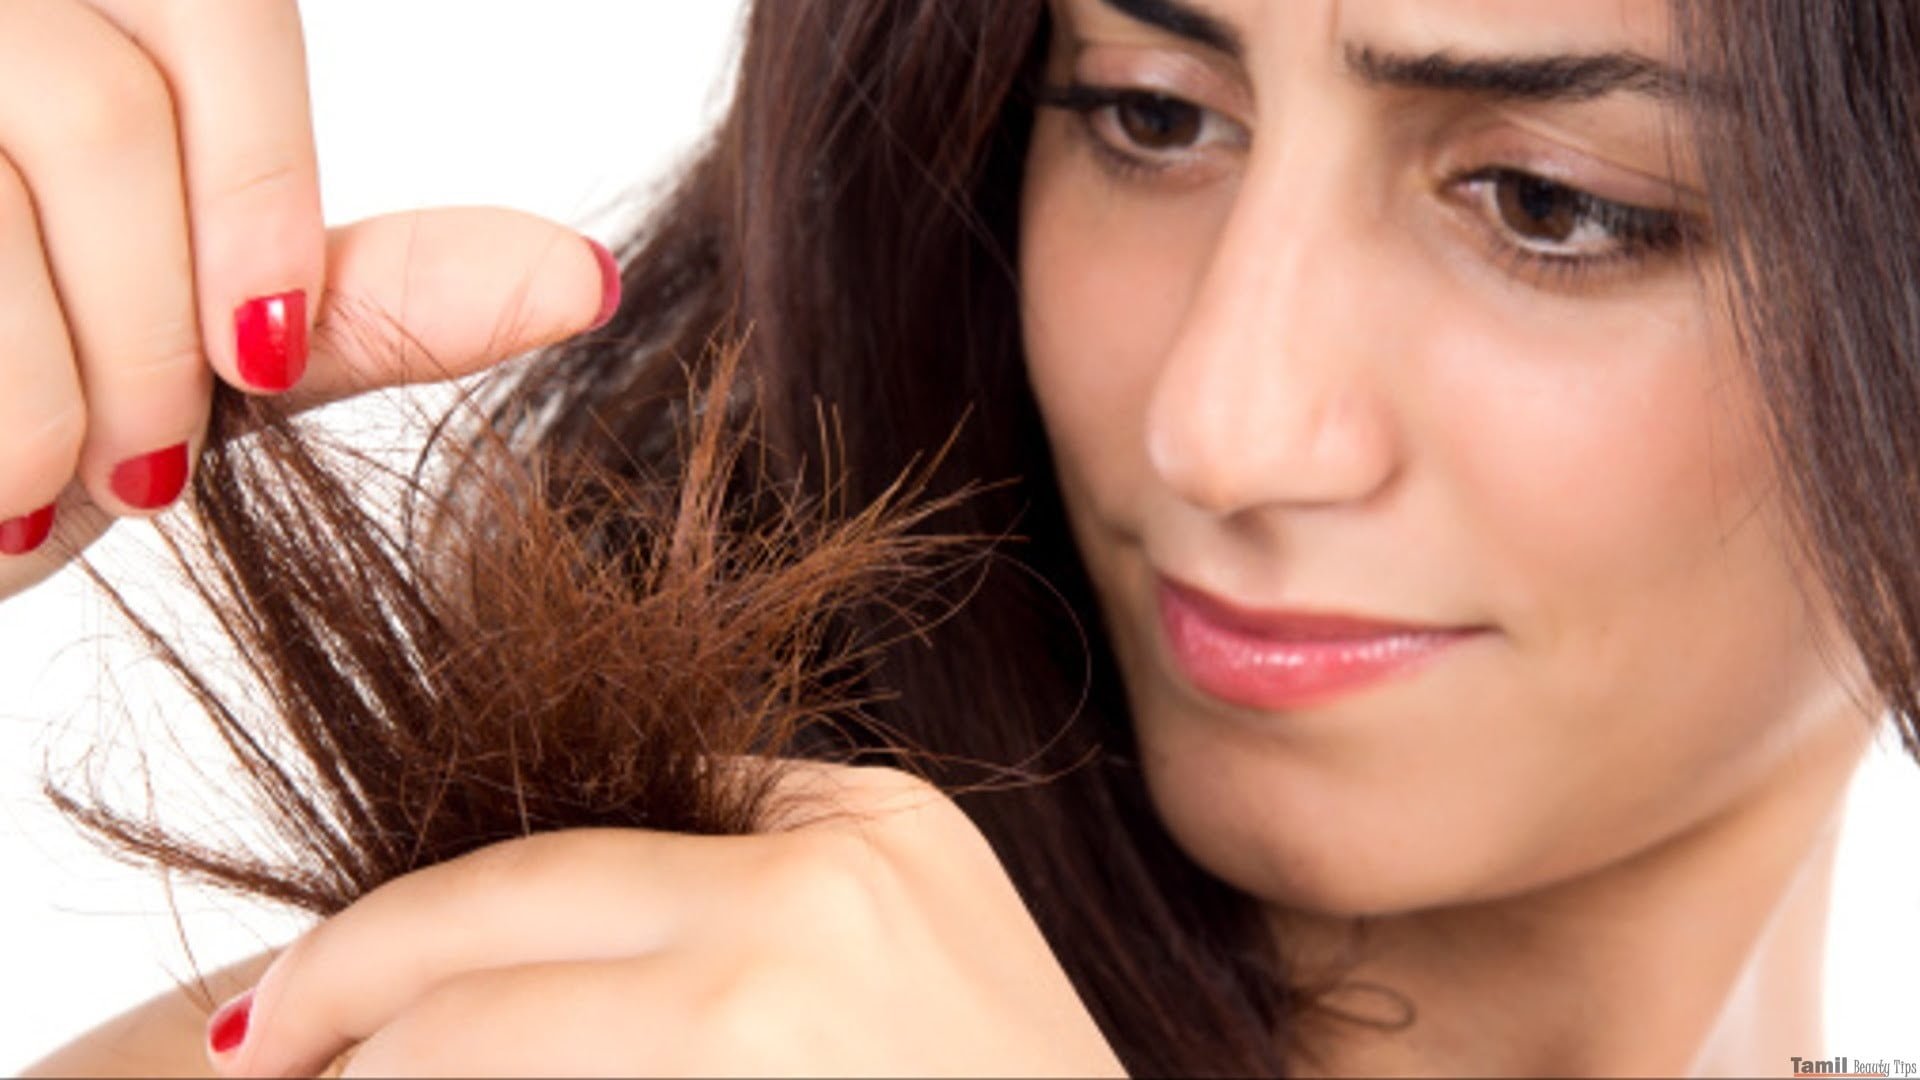 evitar pontas espigadas no cabelo